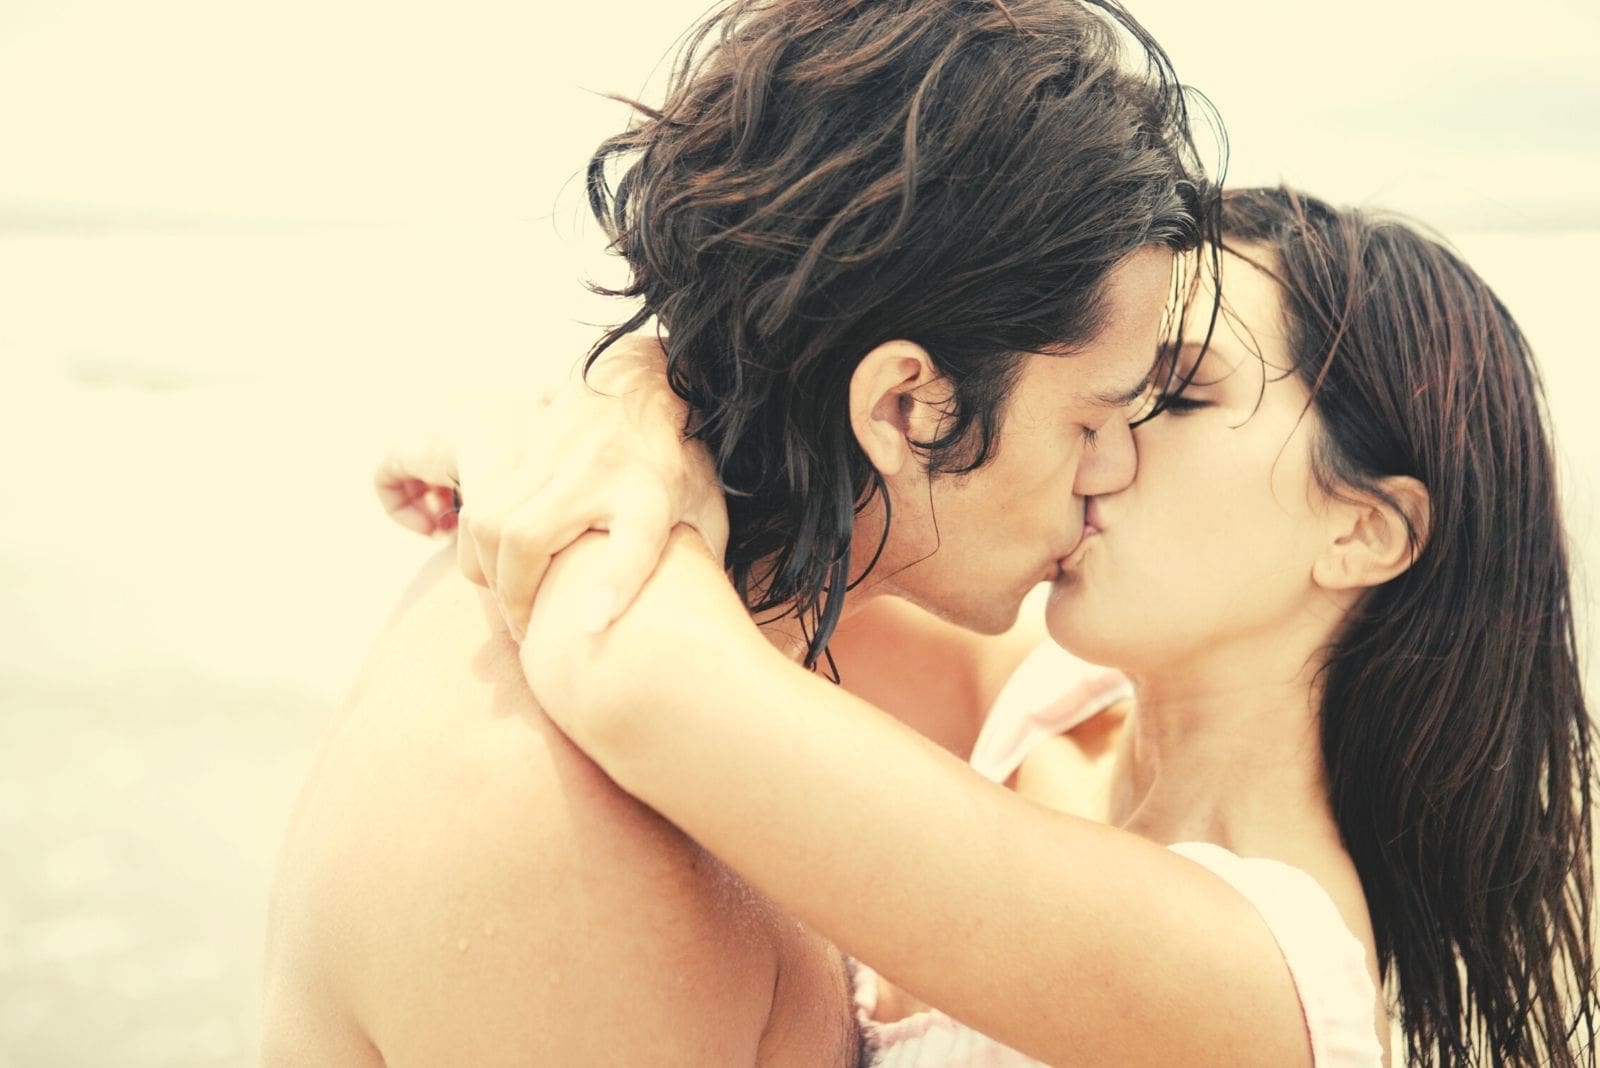 coppia ispanica che si bacia all'aperto con le braccia della donna intorno alle spalle del ragazzo